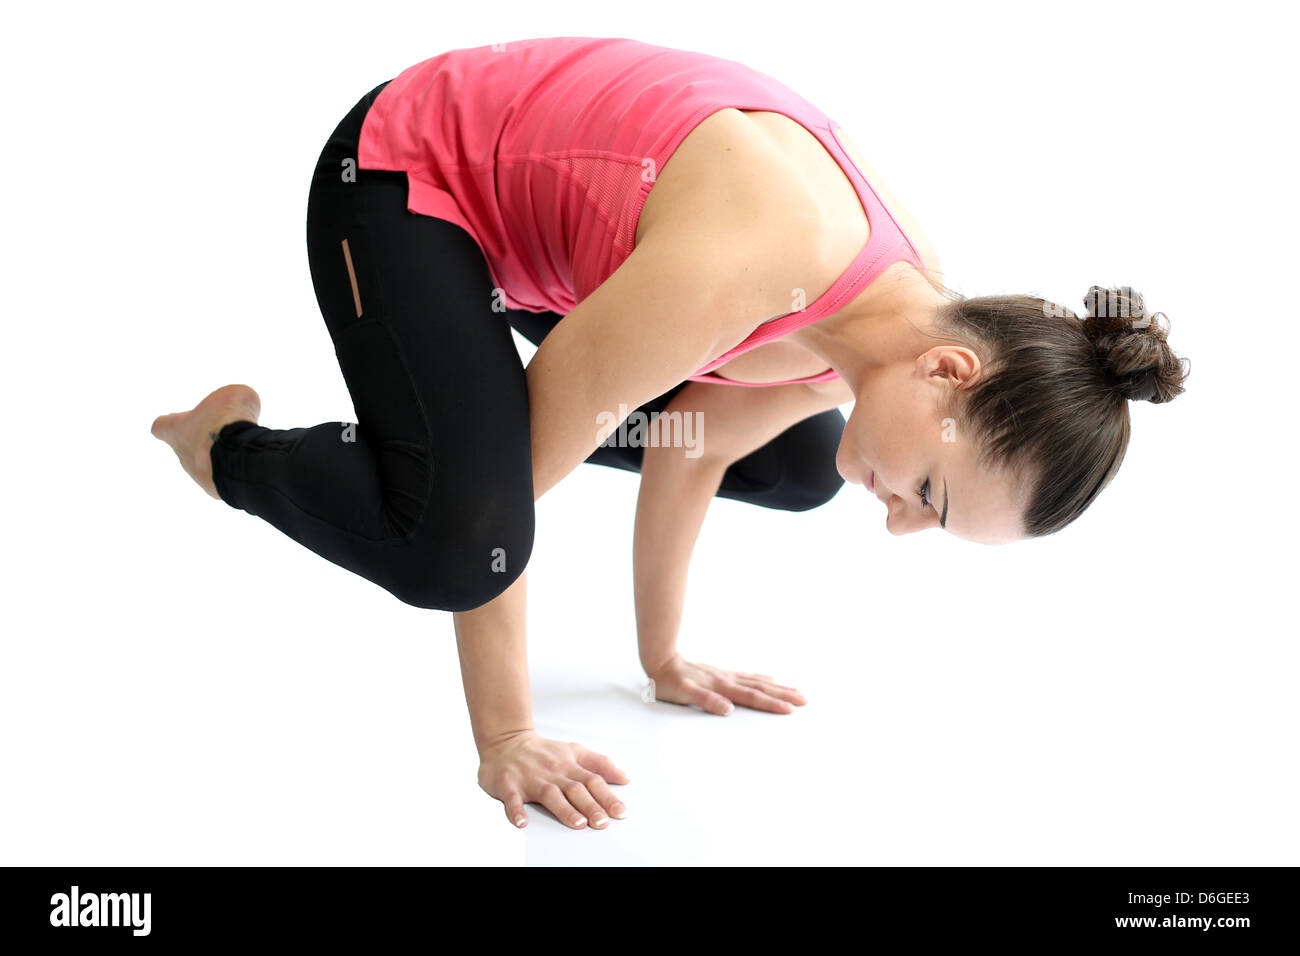 Montare sano giovane donna in abiti sportivi, eseguire esercizi sul pavimento, isolata contro uno sfondo bianco, Tracciato di ritaglio Foto Stock